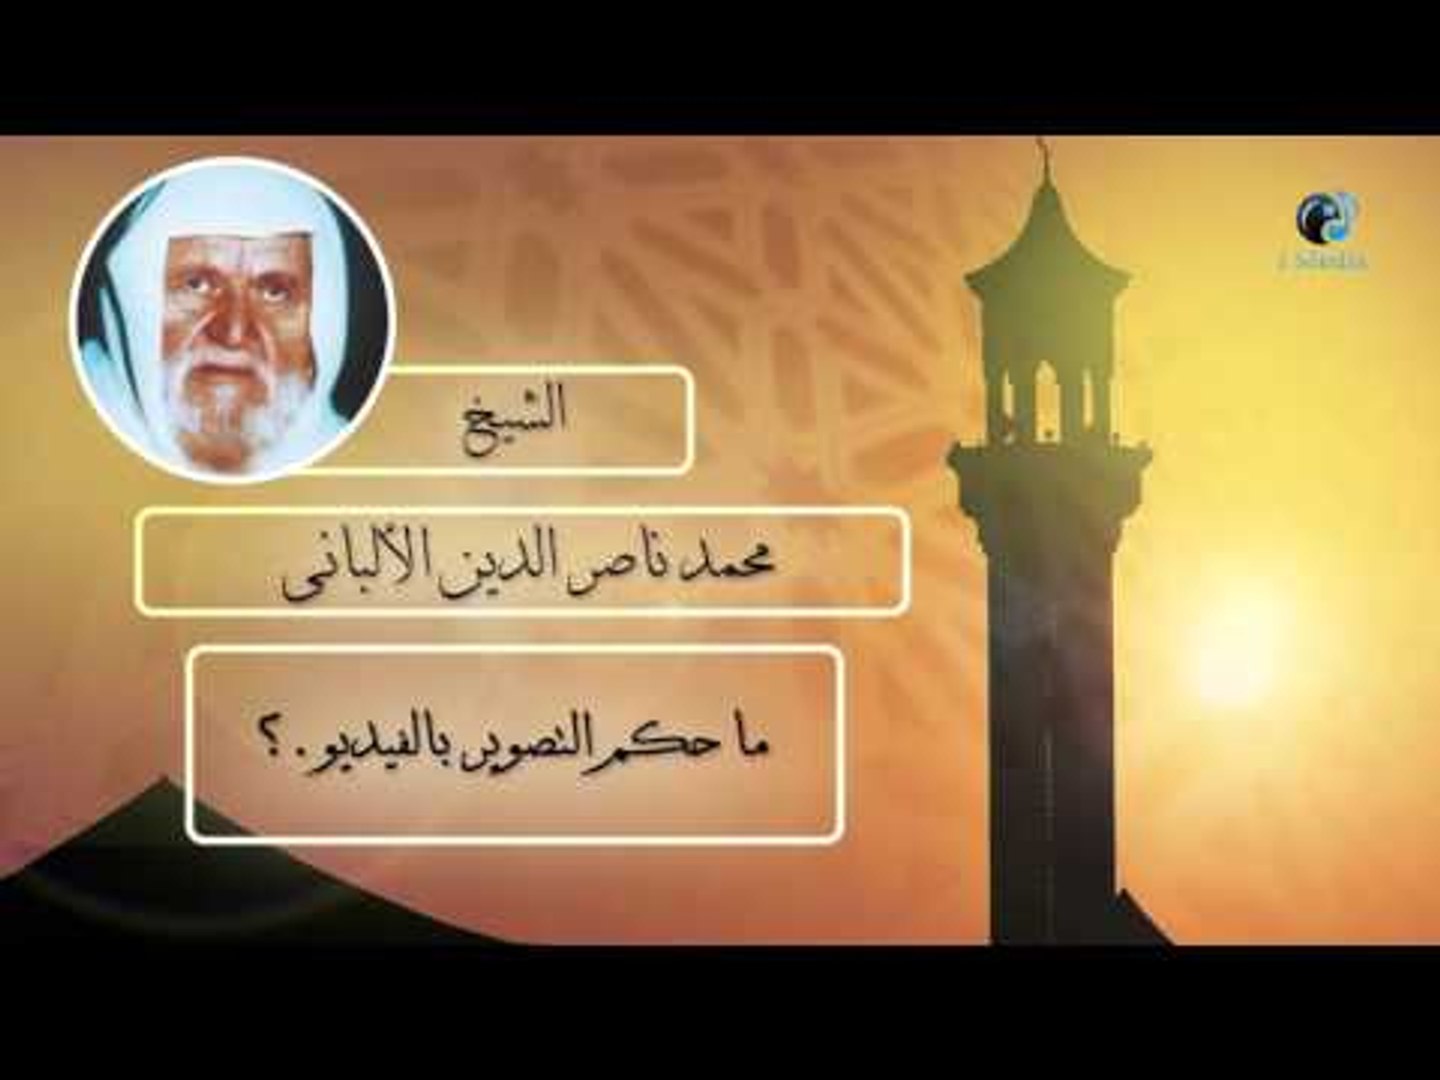 الشيخ الألبانى | ما حكم التصوير بالفيديو ؟ - فيديو Dailymotion